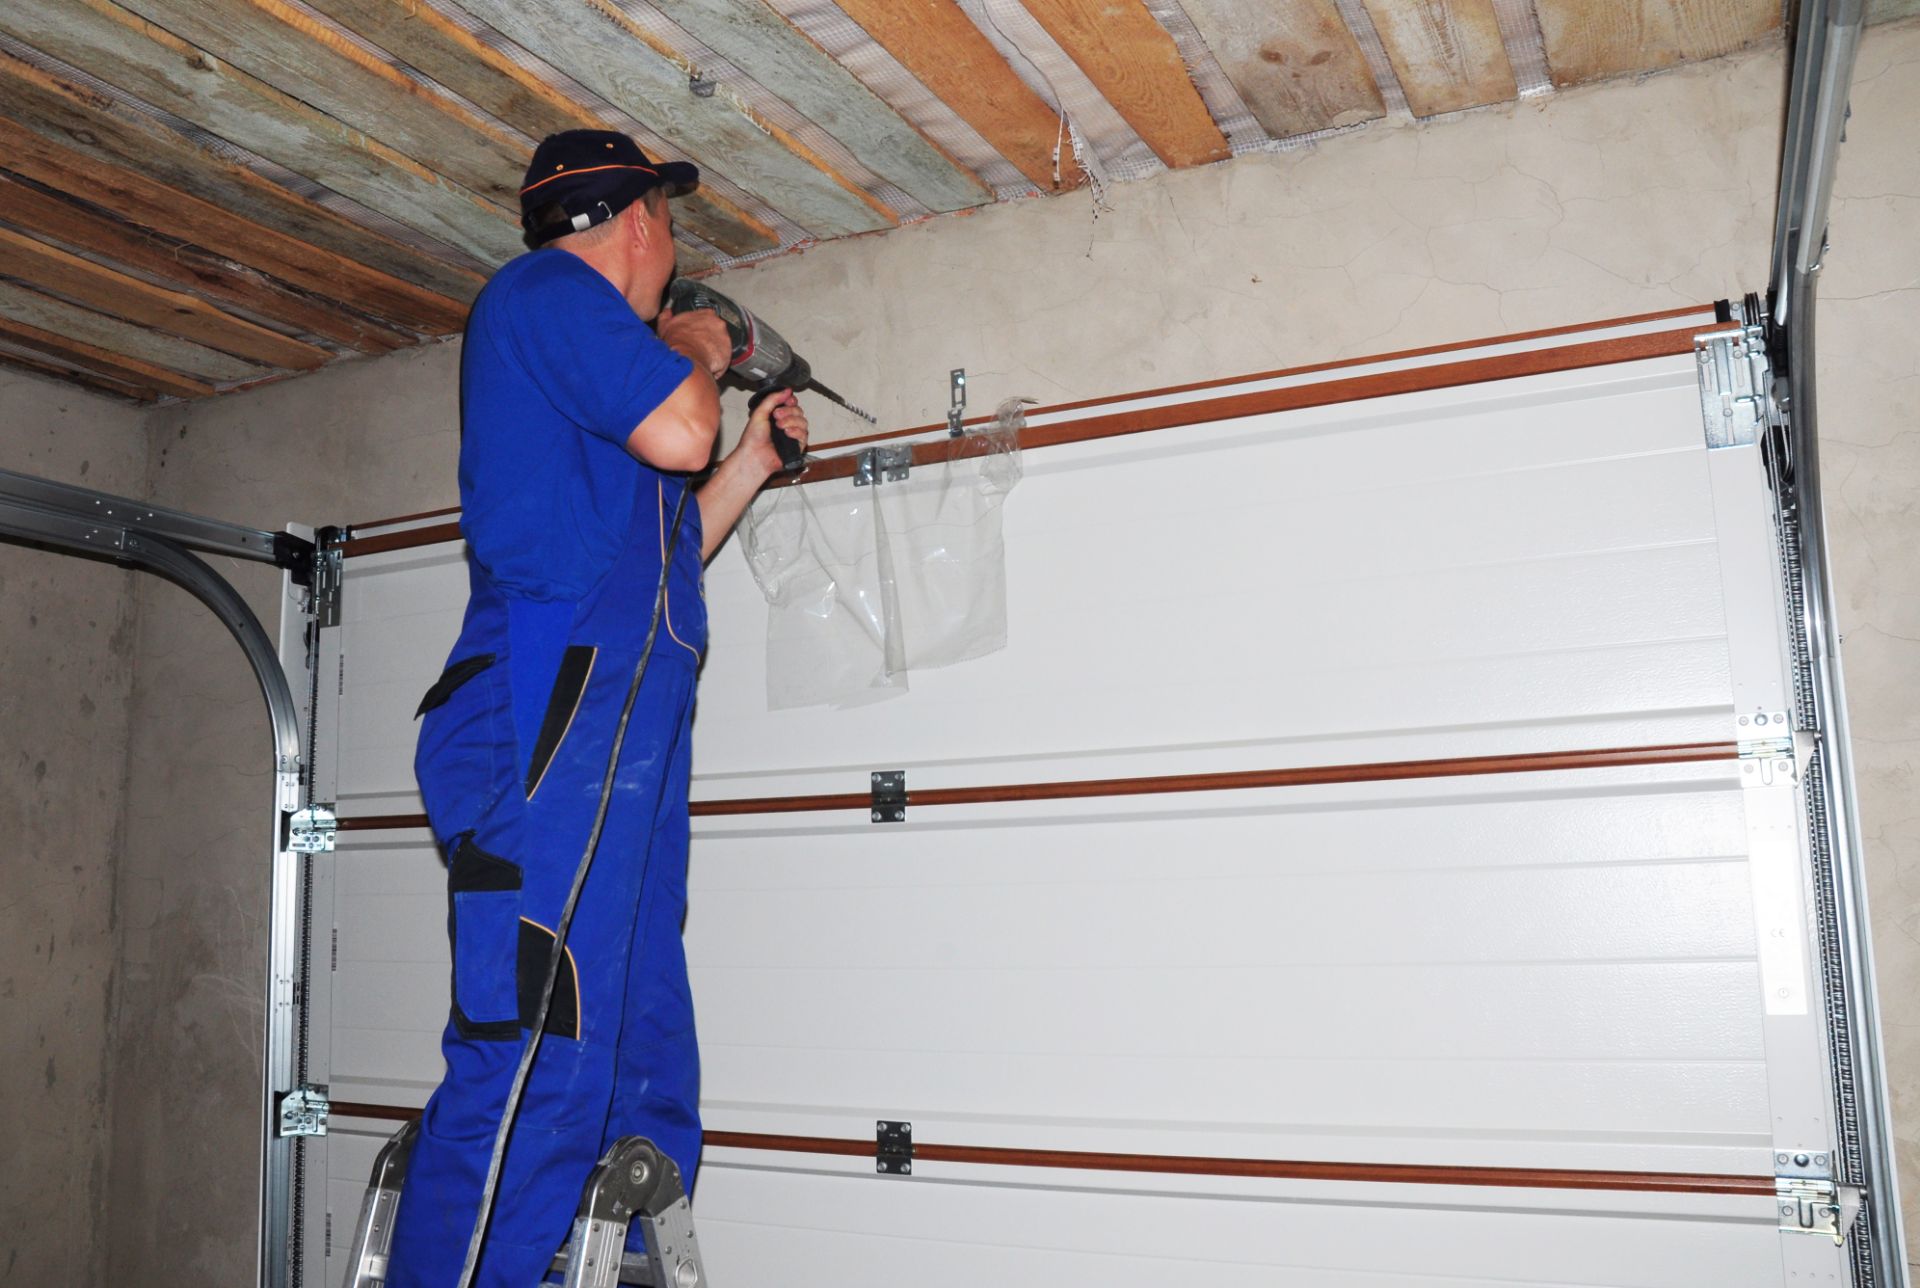 A worker installing a garage door